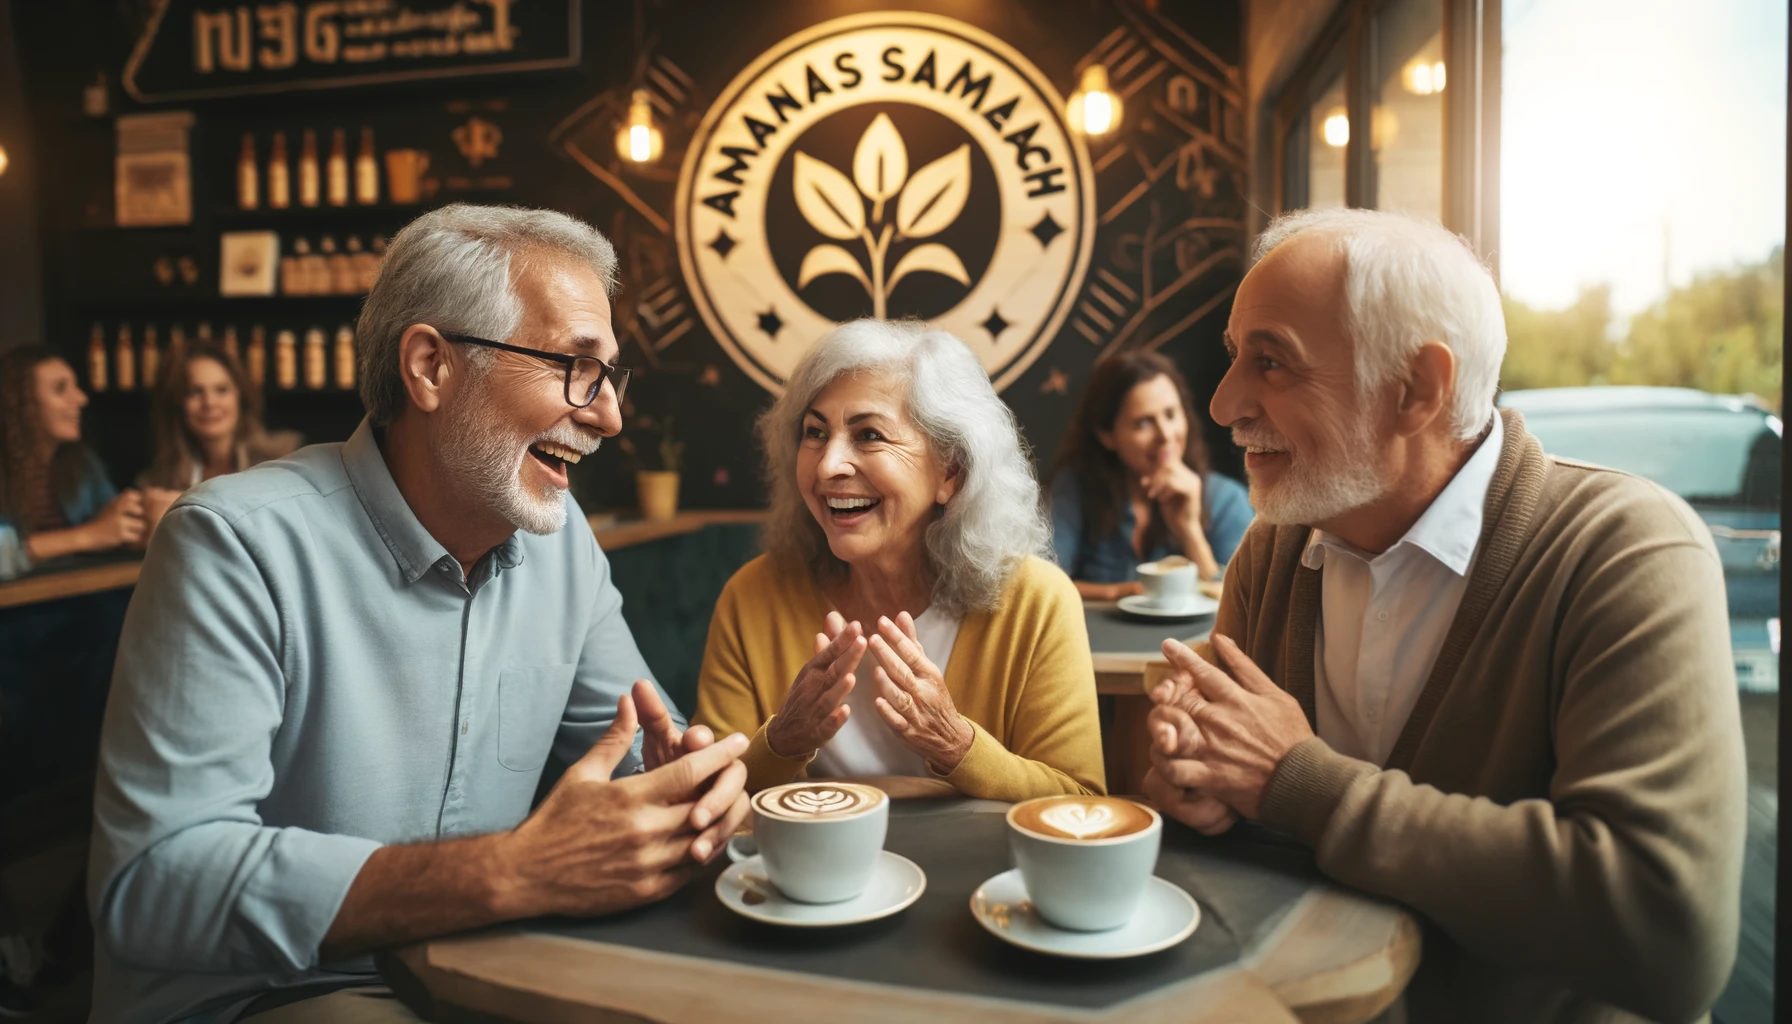 זוגות מבוגרים יושבים בבית קפה דרך מיזם ההיכרויות האננס השמח